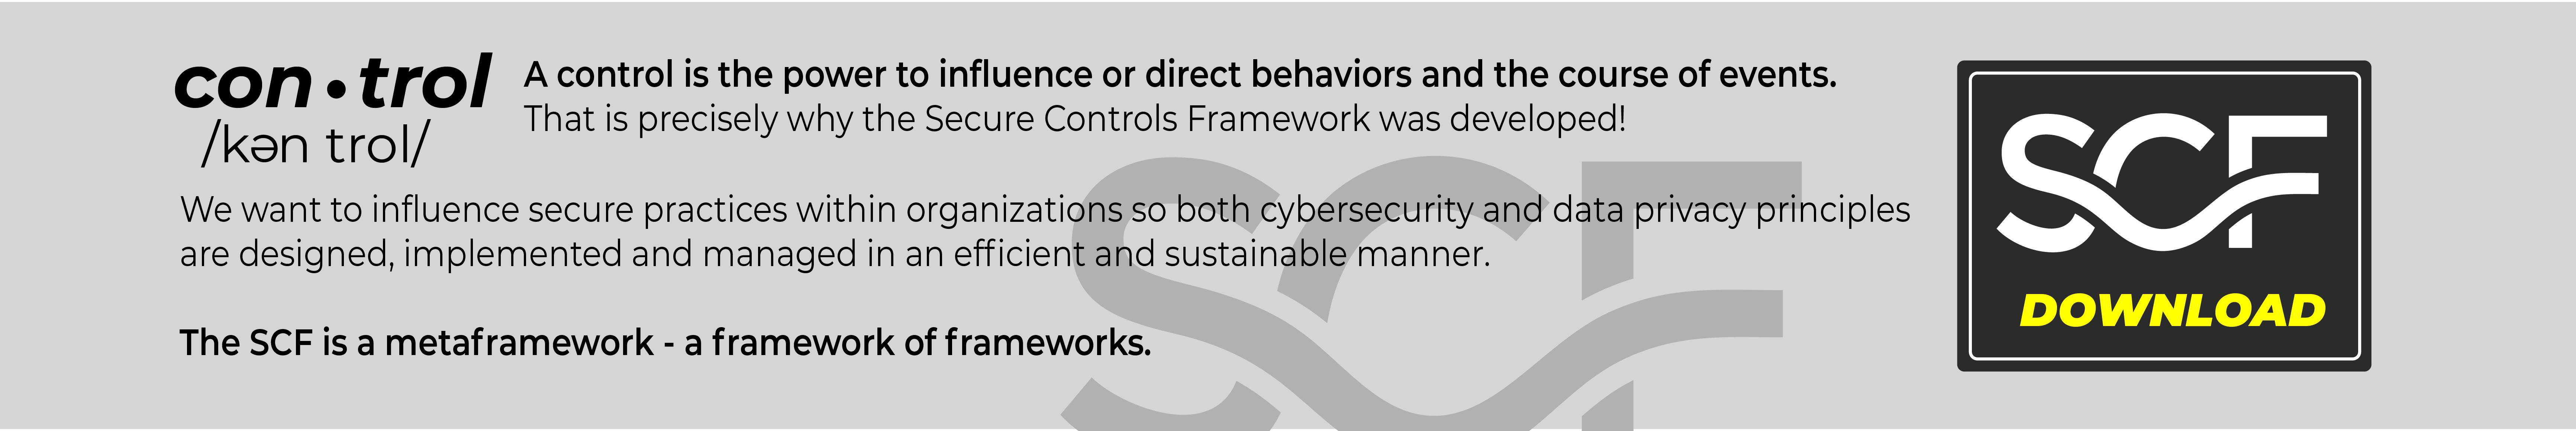 Secure Controls Framework SCF Download